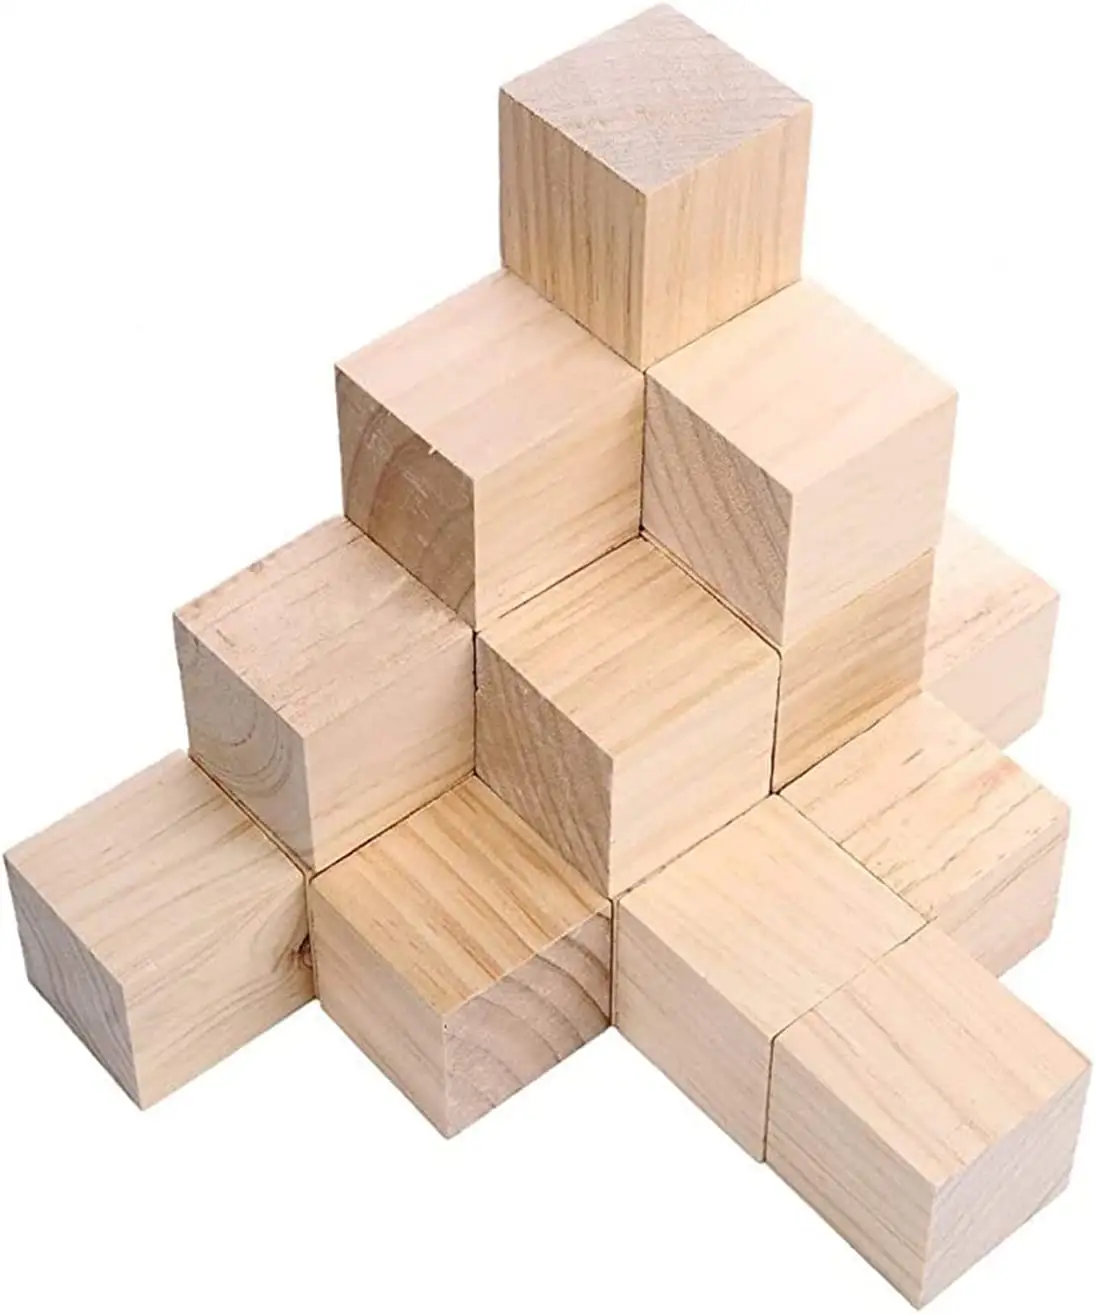 Kubus kerajinan kayu alami yang belum selesai untuk kerajinan Puzzle membuat kerajinan kubus kayu